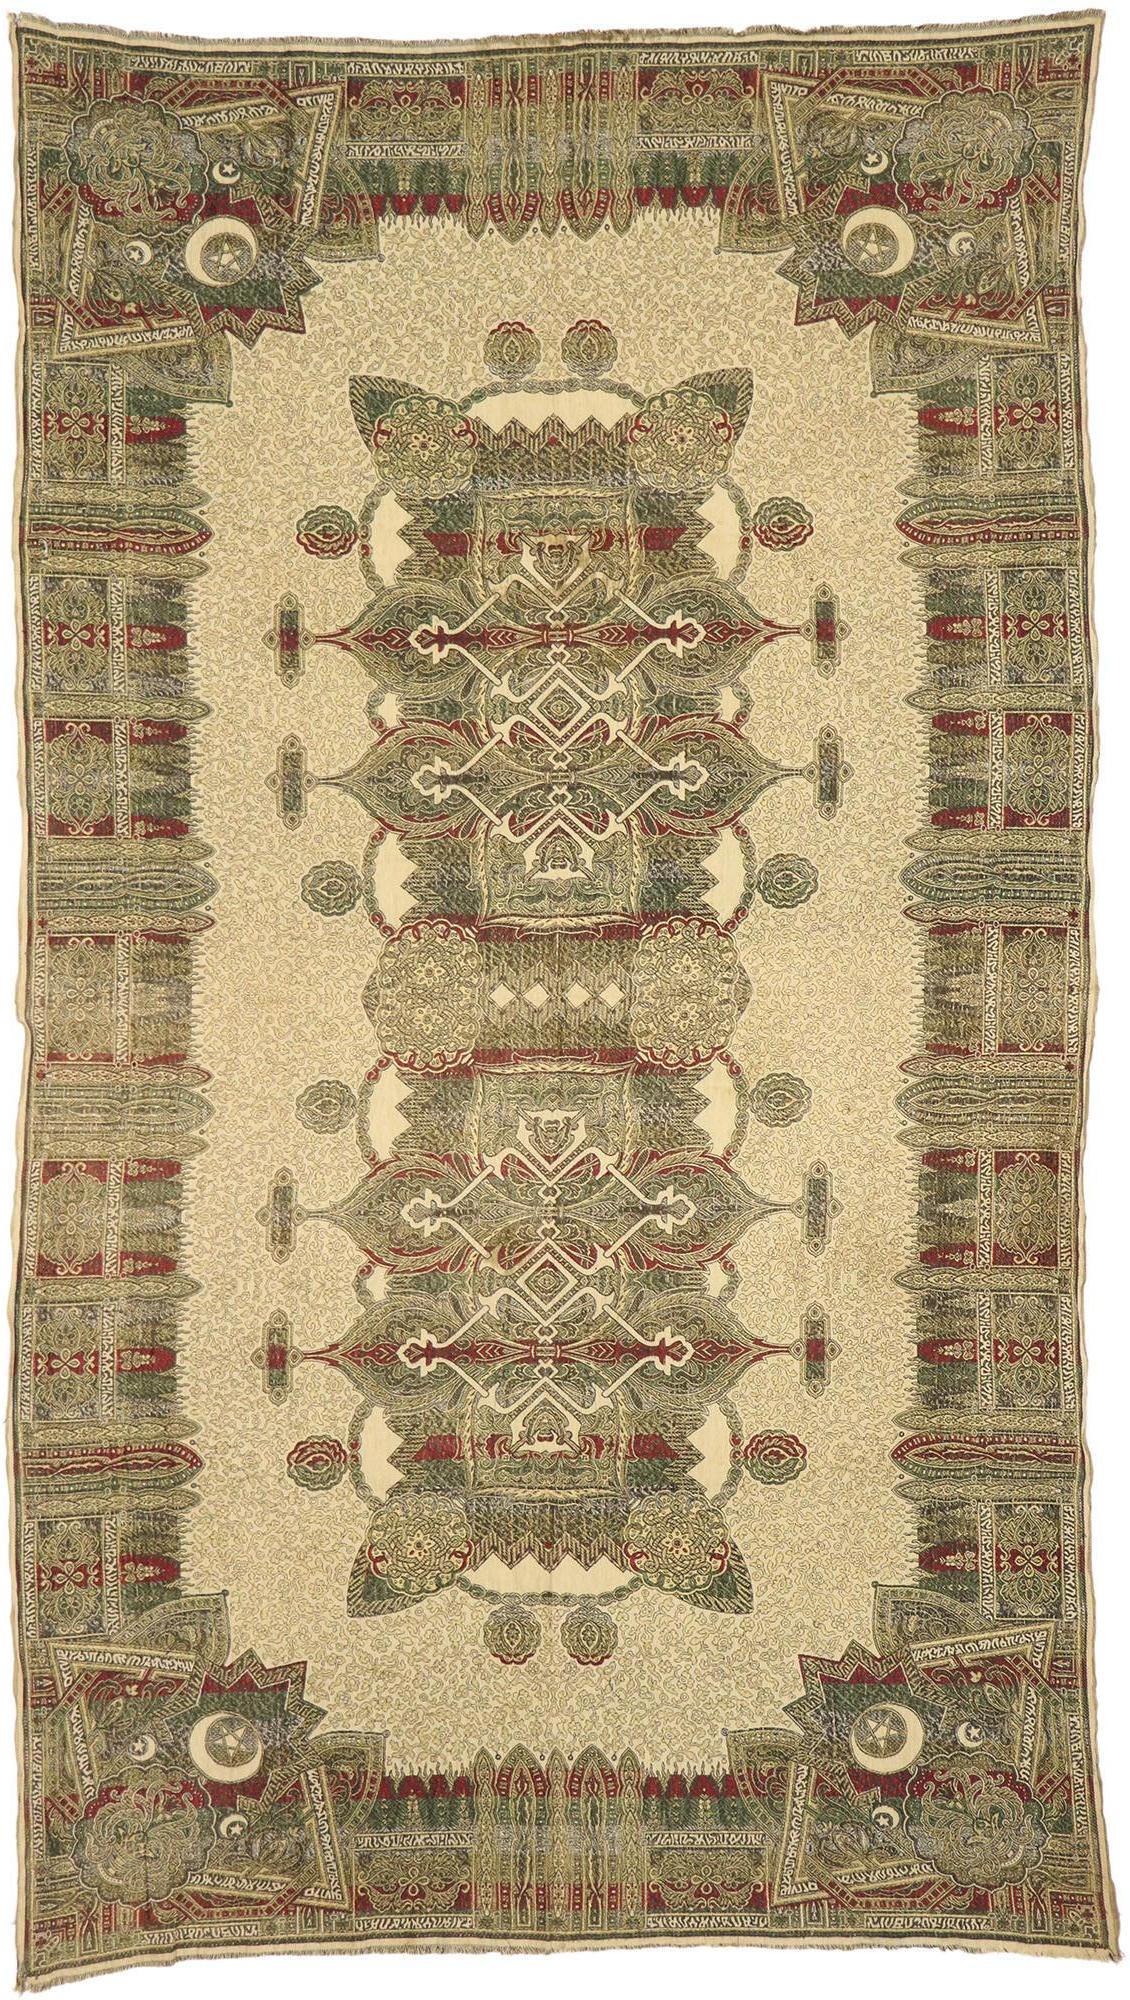 Textile espagnol de Grenade brodé des années 1930